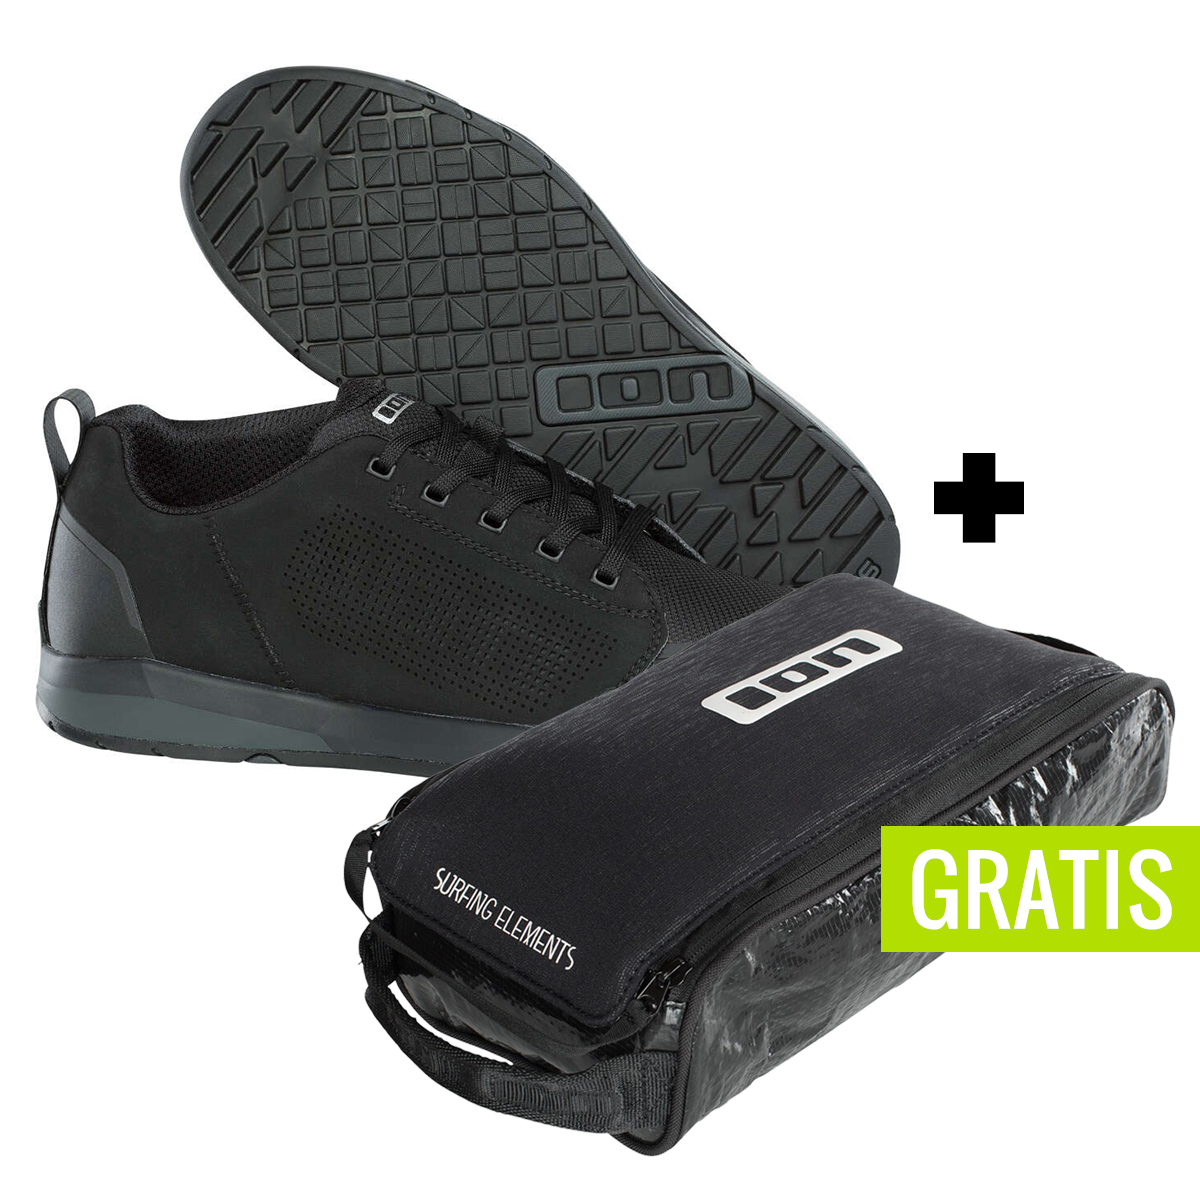 ION Chaussures VTT Raid_Amp Black + free shoe bag